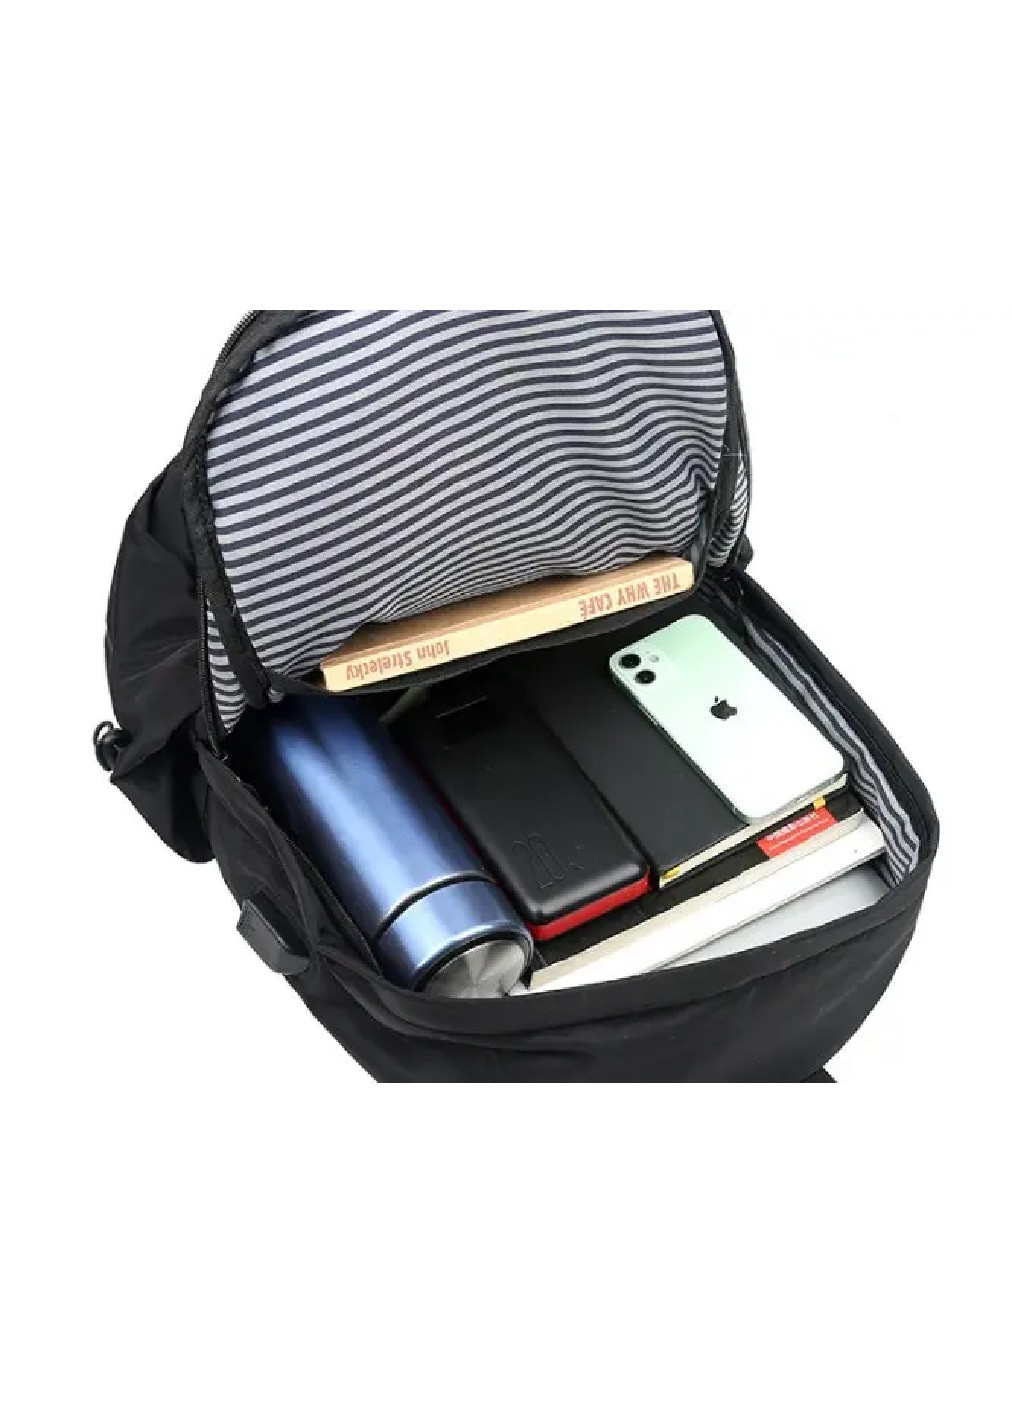 Рюкзак сумка городской спортивный компактный на каждый день с USB выходом 45х30х15 см объем 20 л (475241-Prob) Серый Unbranded (263678372)